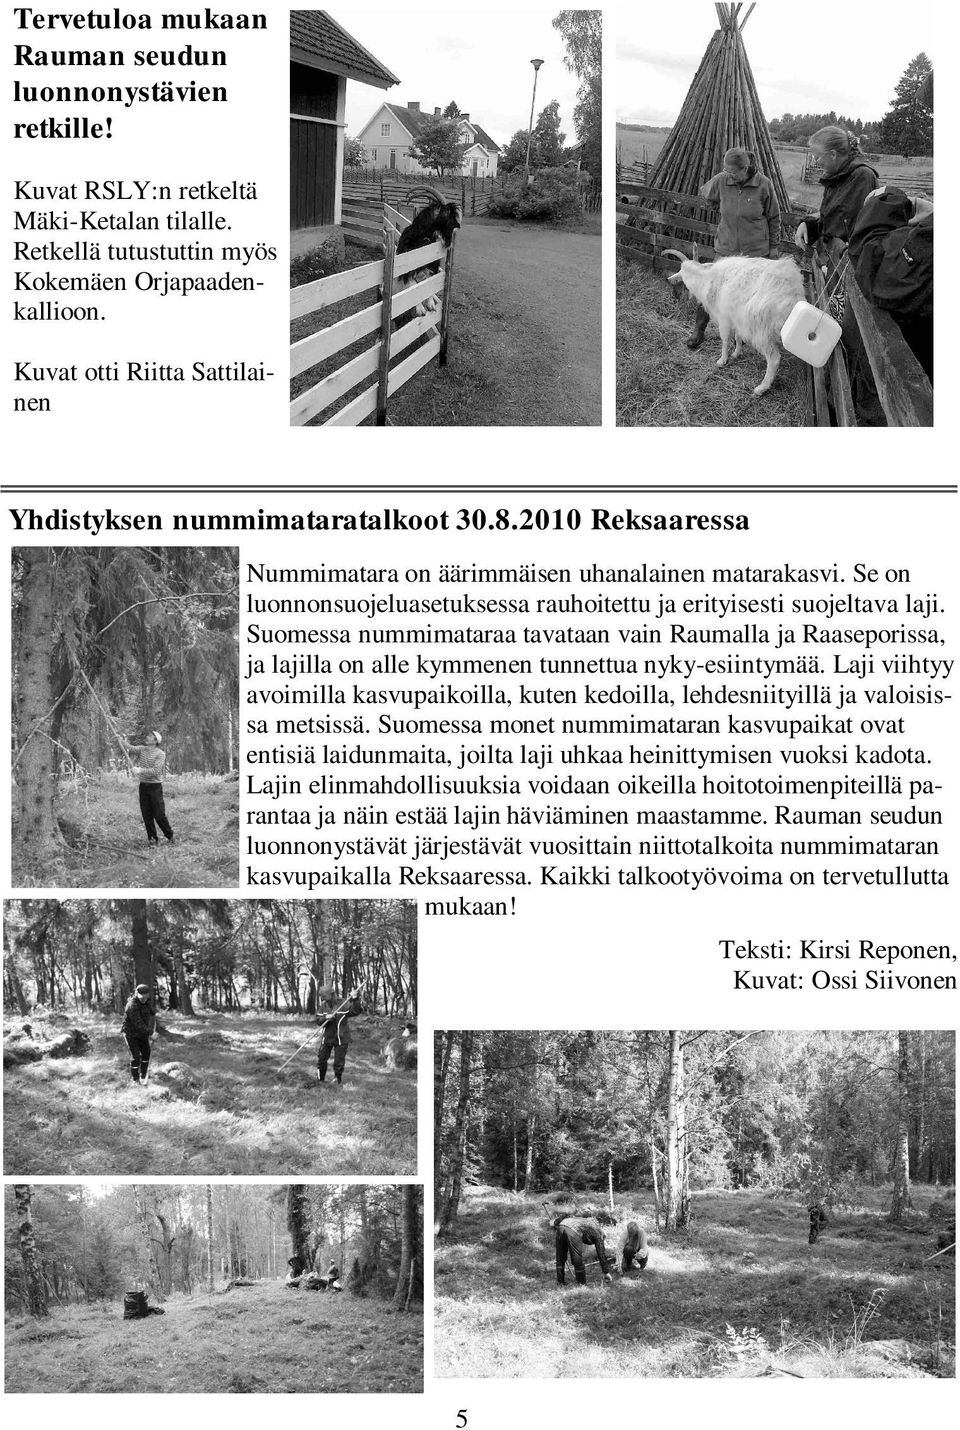 Se on luonnonsuojeluasetuksessa rauhoitettu ja erityisesti suojeltava laji. Suomessa nummimataraa tavataan vain Raumalla ja Raaseporissa, ja lajilla on alle kymmenen tunnettua nyky-esiintymää.